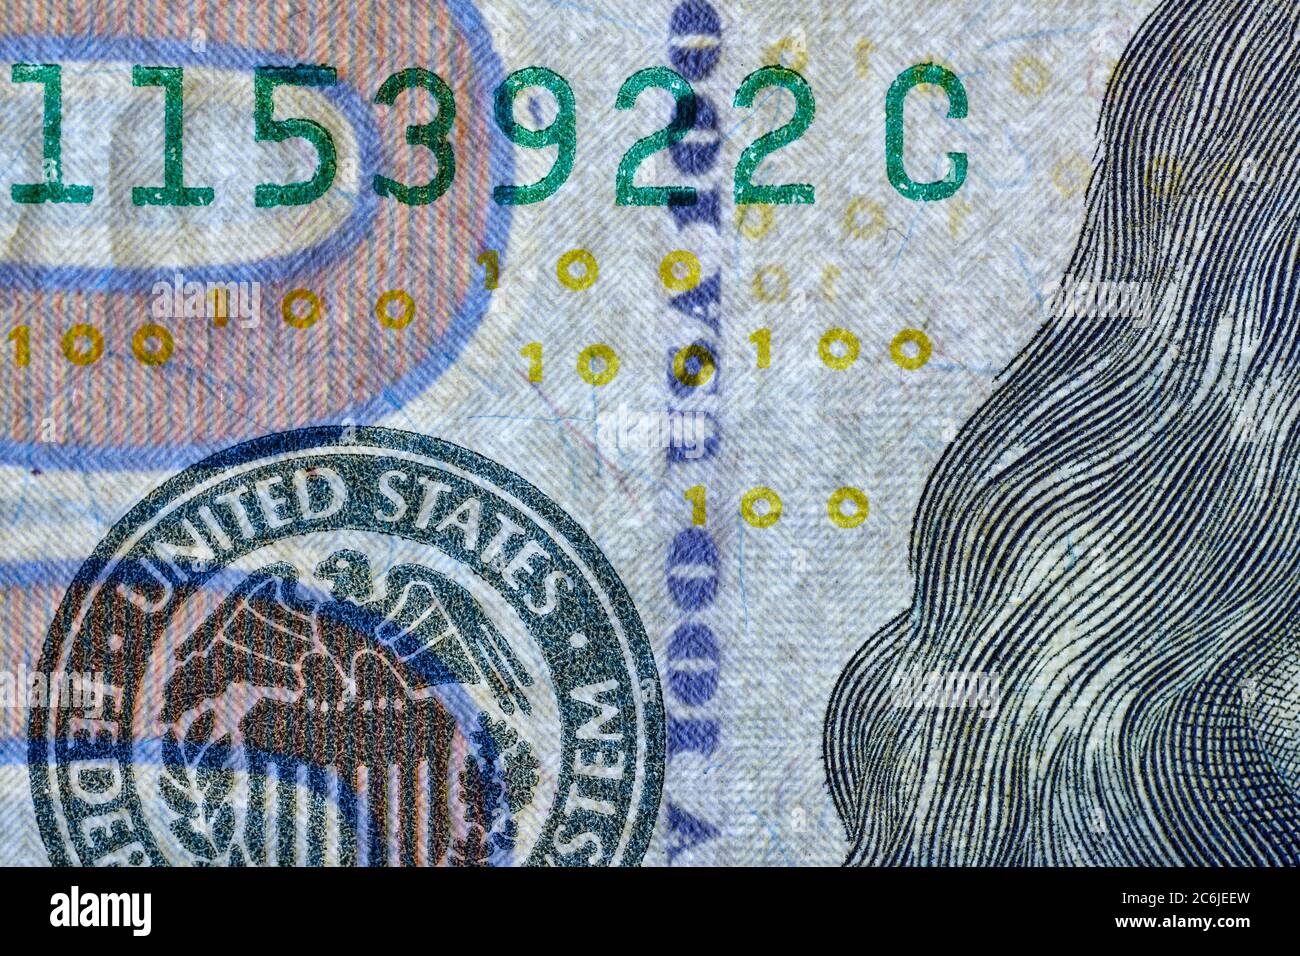 Hilo de seguridad impreso con letras alternadas USA y el número 100 usado en billetes de US$100 (serie 2009 A) como característica de seguridad. Foto de stock